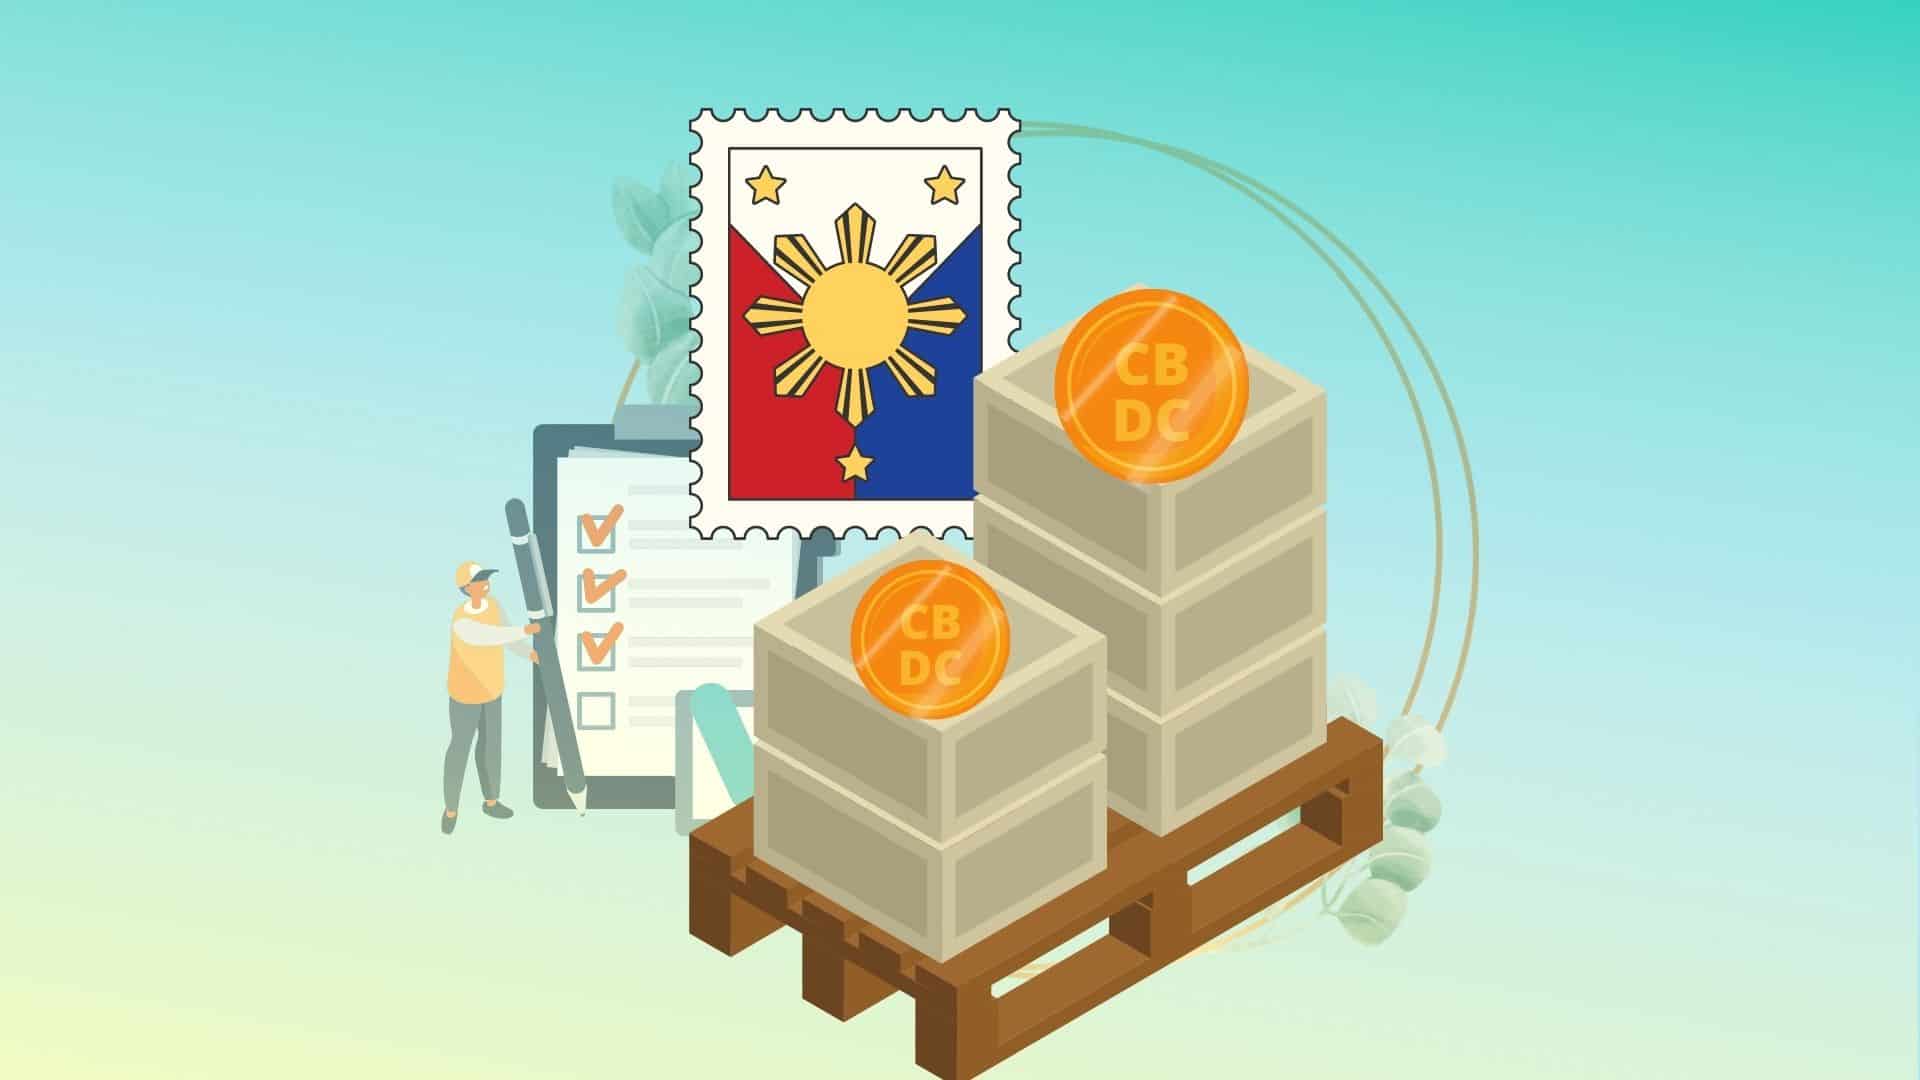 Центробанк Филиппин приступает к пилотному проекту интеграции оптовой цифровой валюты